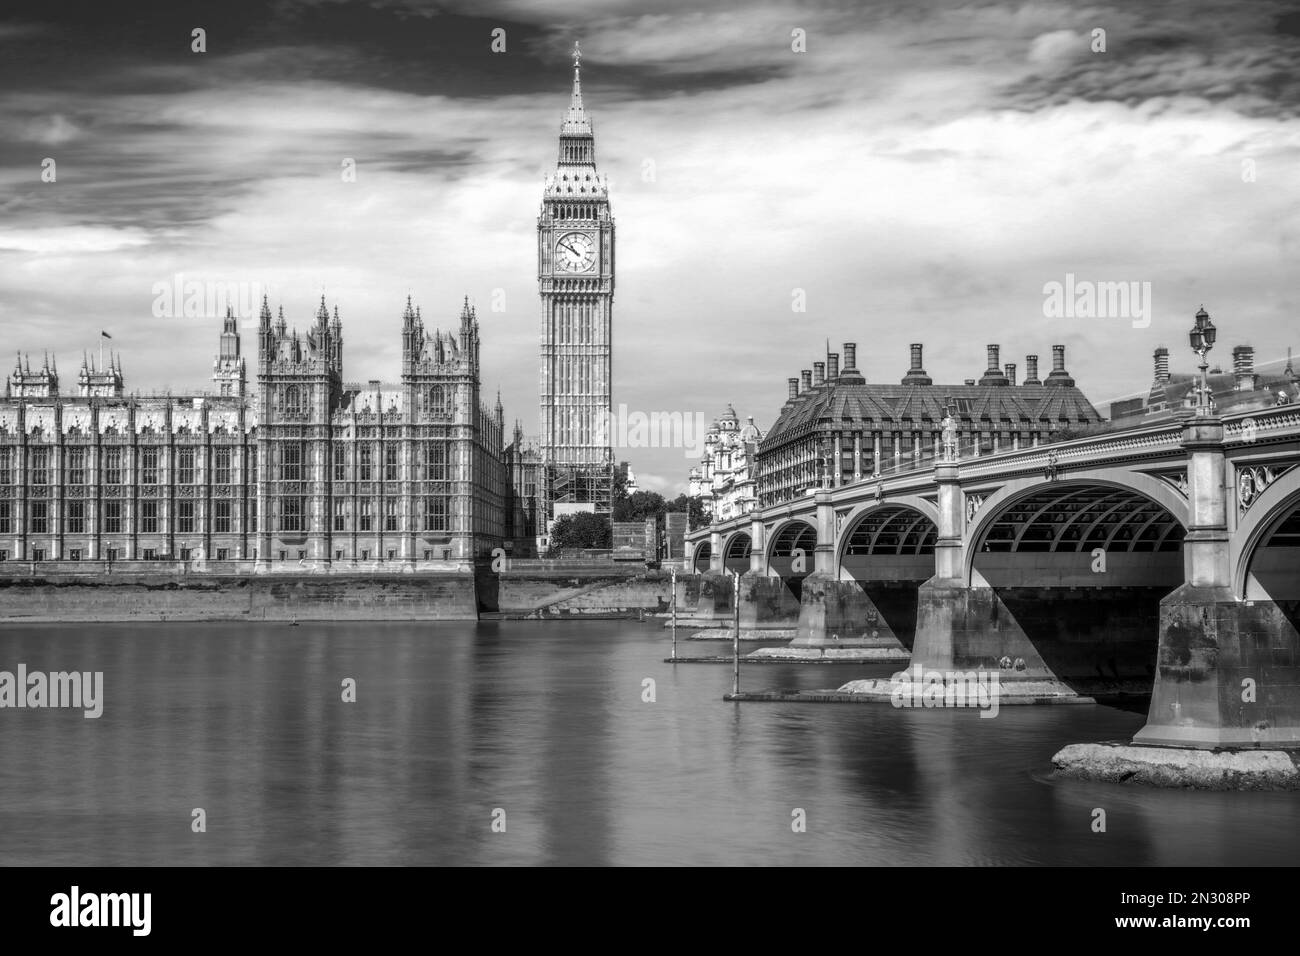 Westminster Bridge et Big Ben à Londres, Royaume-Uni. Photographie en noir et blanc longue exposition avec flou de mouvement. Banque D'Images